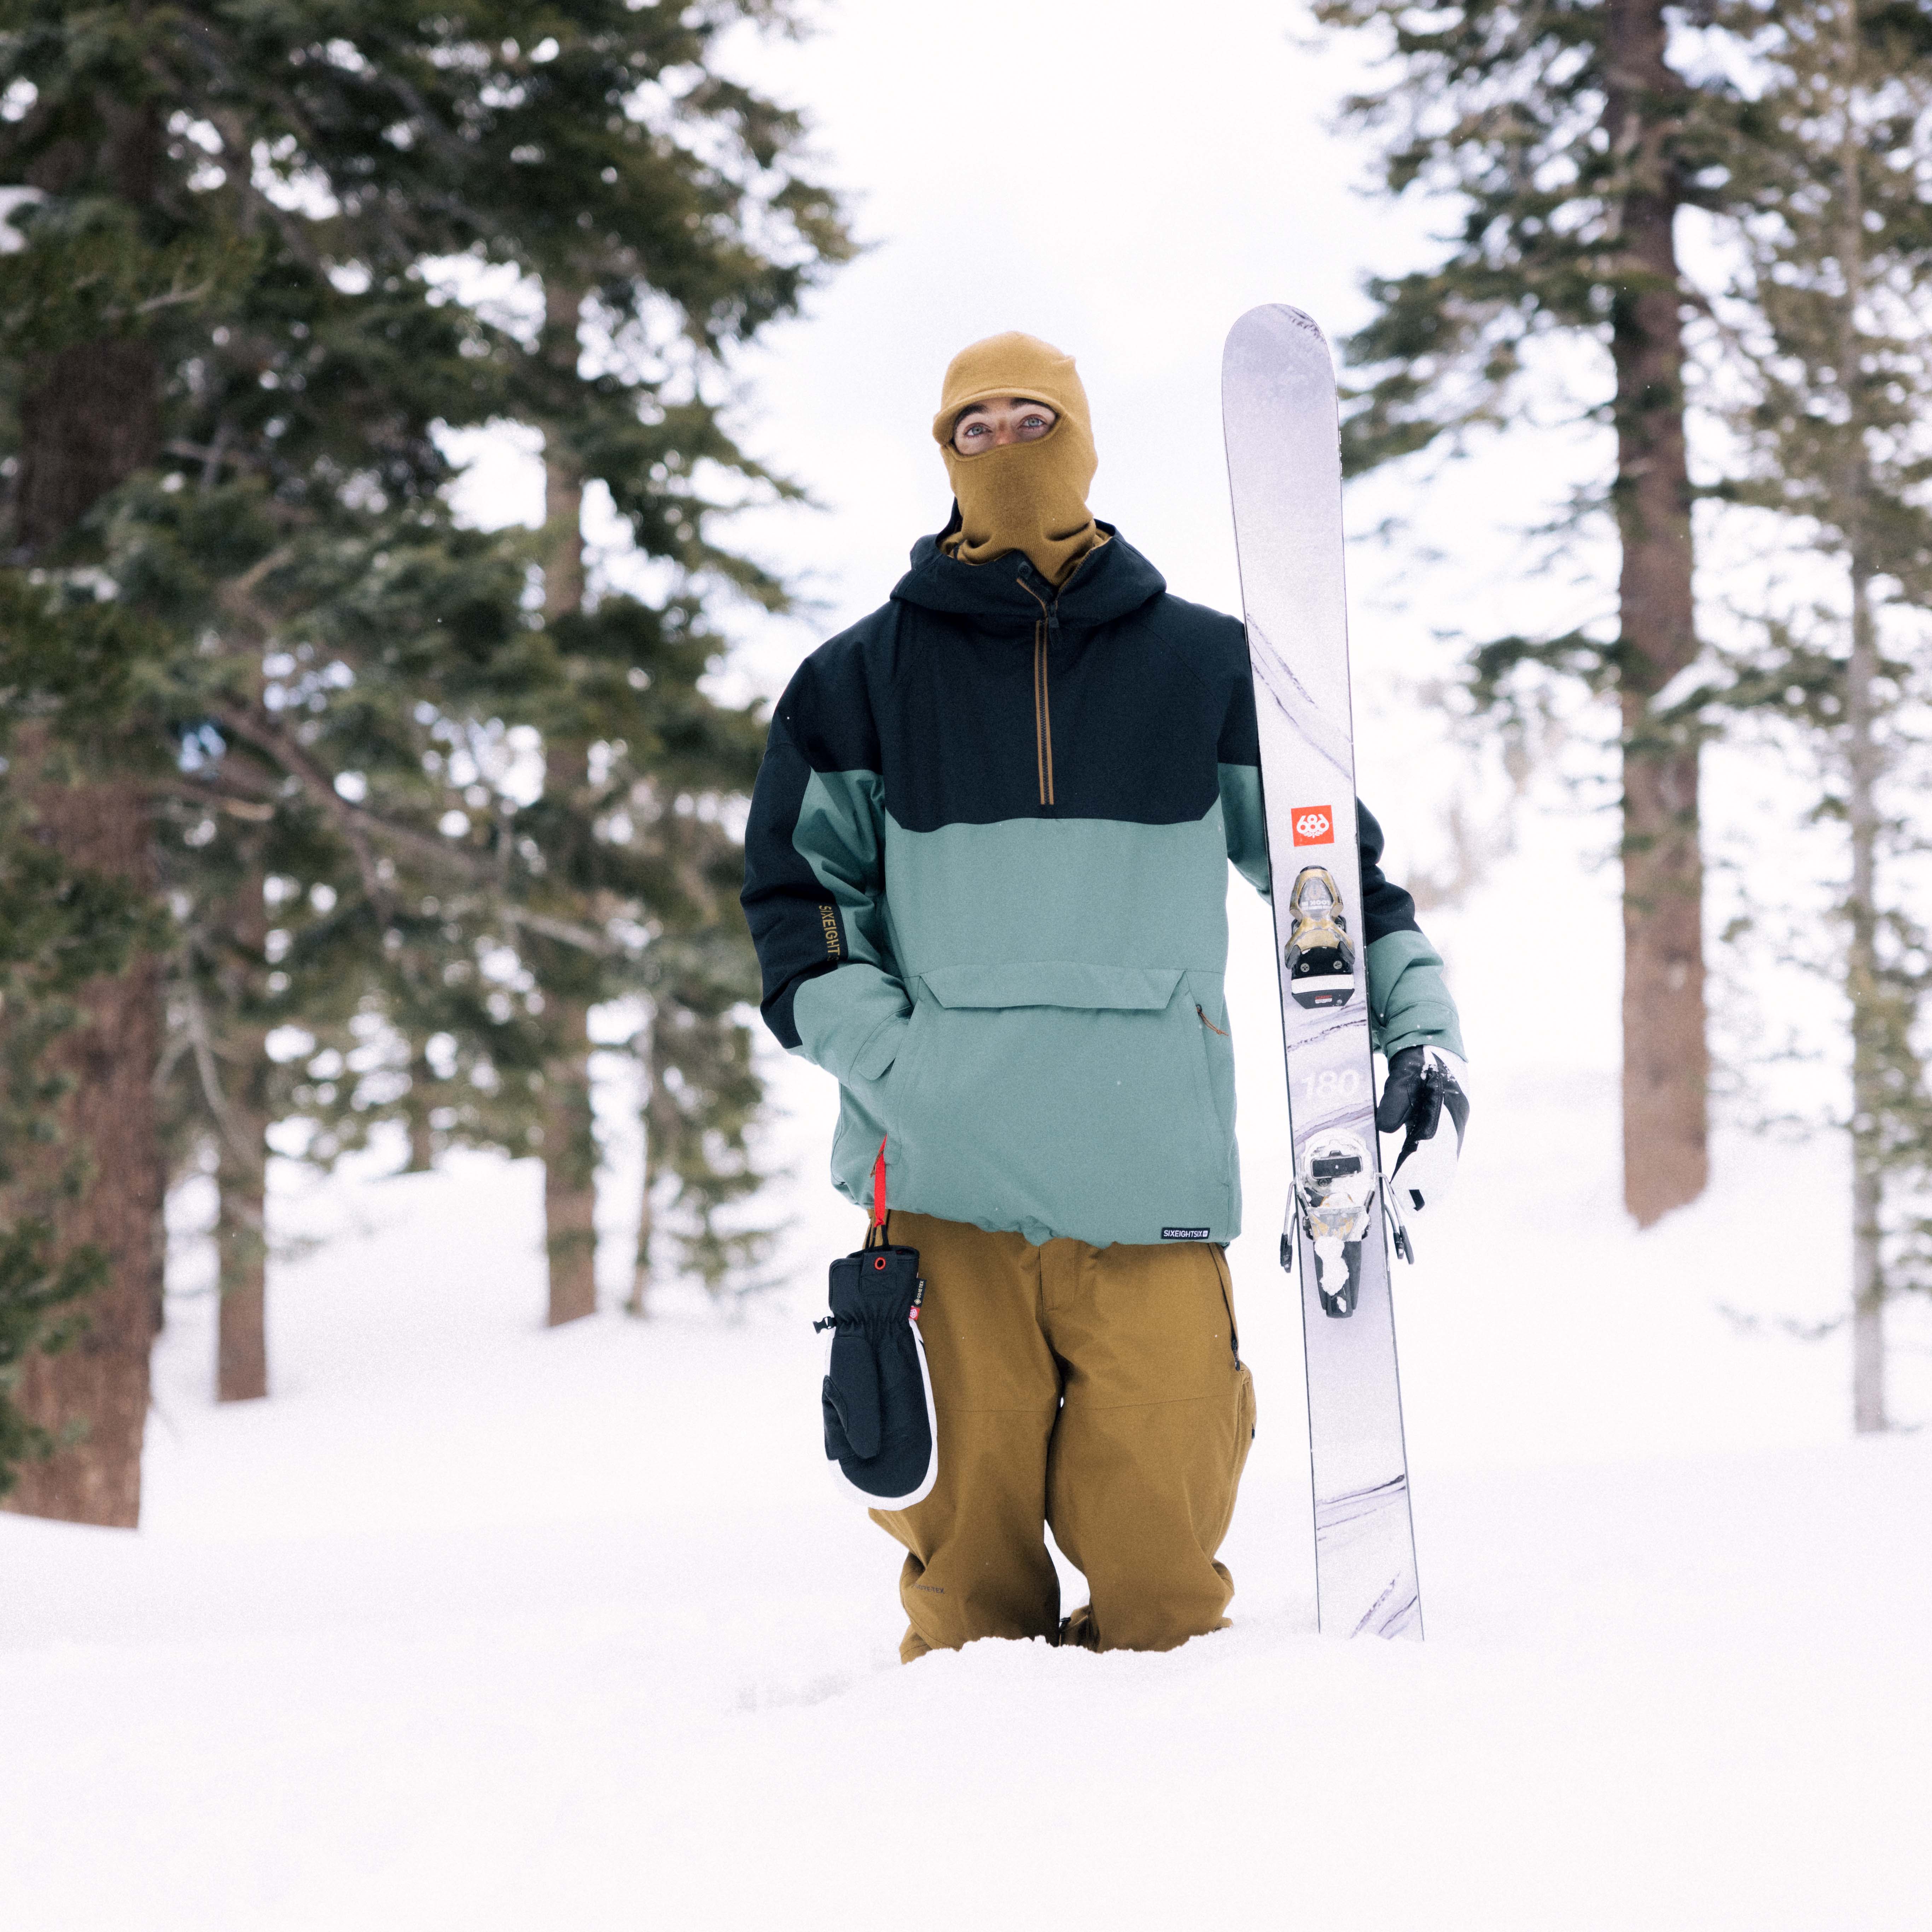 686 Renewal Men's Snowboard/Ski Jacket